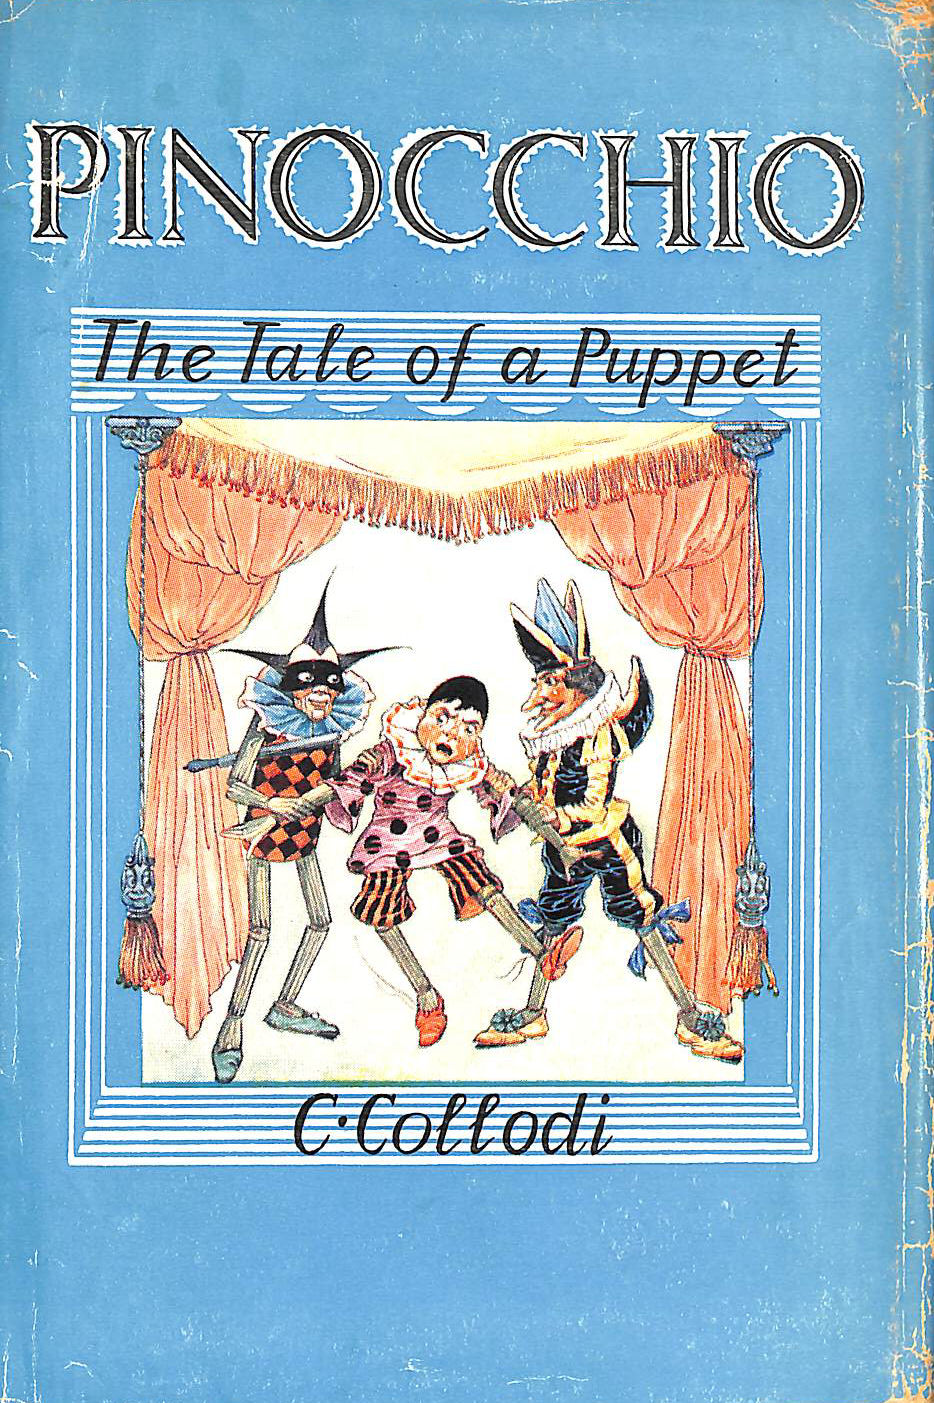 C COLLODI - Pinocchio: The Tale of a Puppet